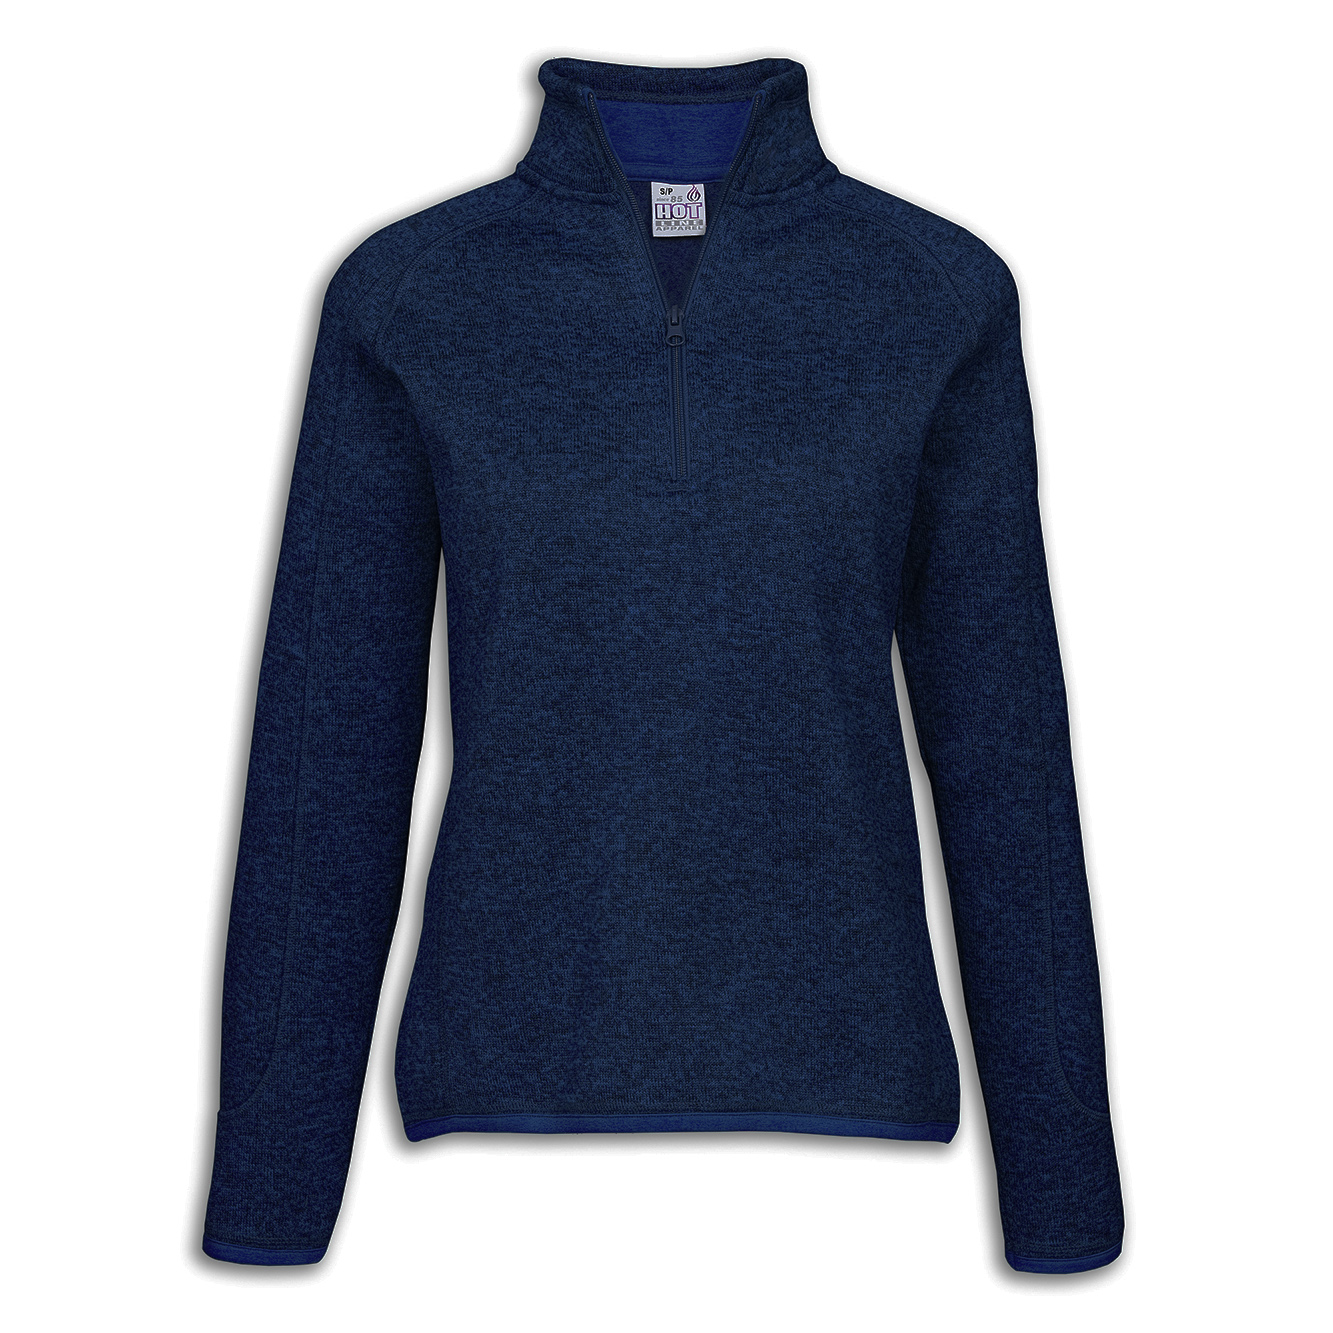 WFL-17 Ladies 1/4 Zip Sweater Fleece | Hotline Apparel